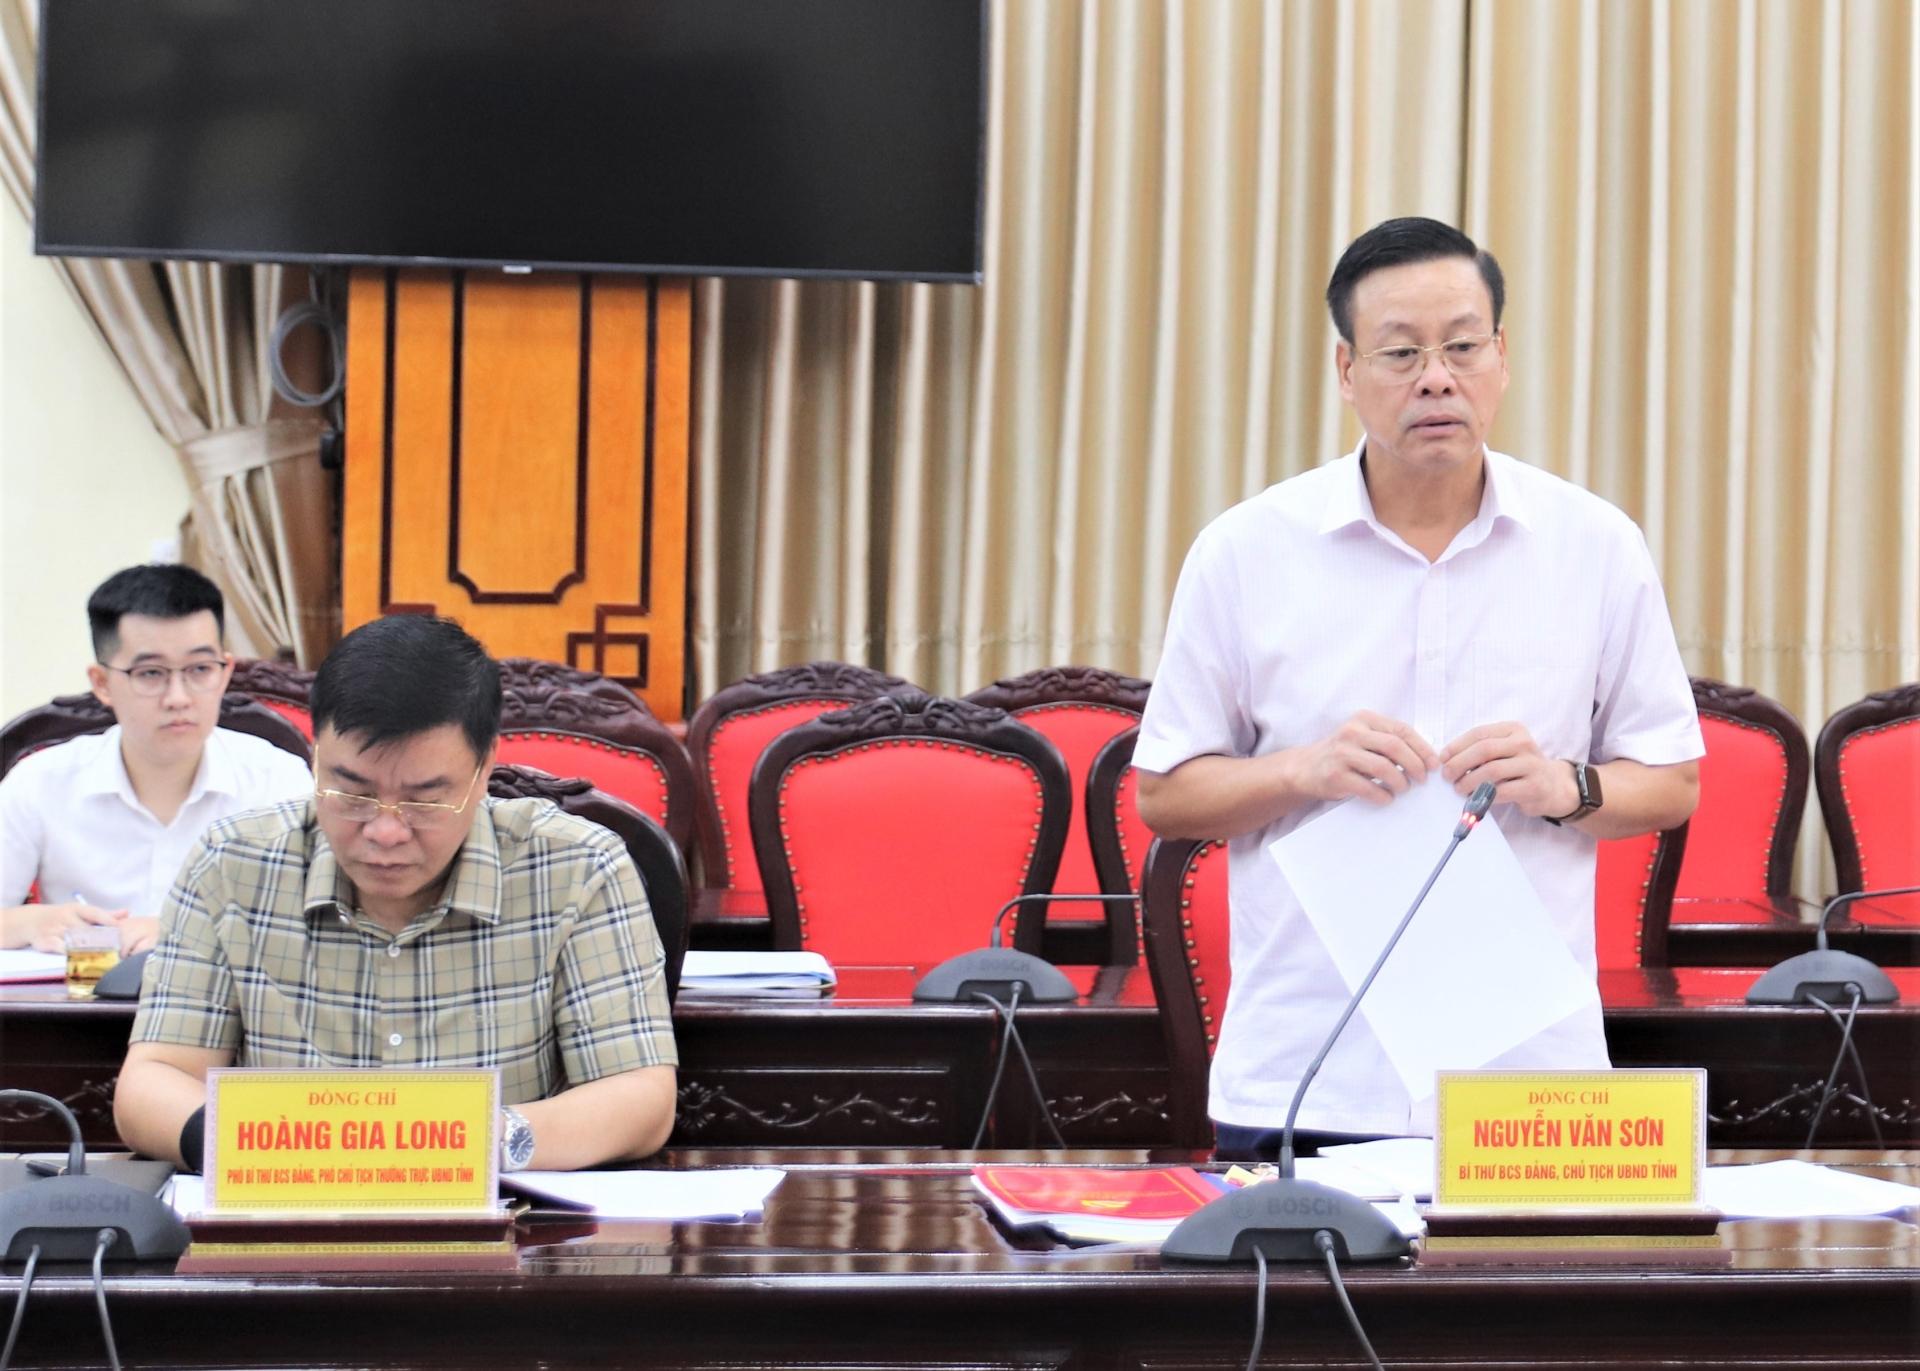 Chủ tịch UBND tỉnh Nguyễn Văn Sơn báo cáo công tác lãnh đạo, chỉ đạo và tổ chức thực hiện công tác cán bộ theo các nghị quyết của Đảng.